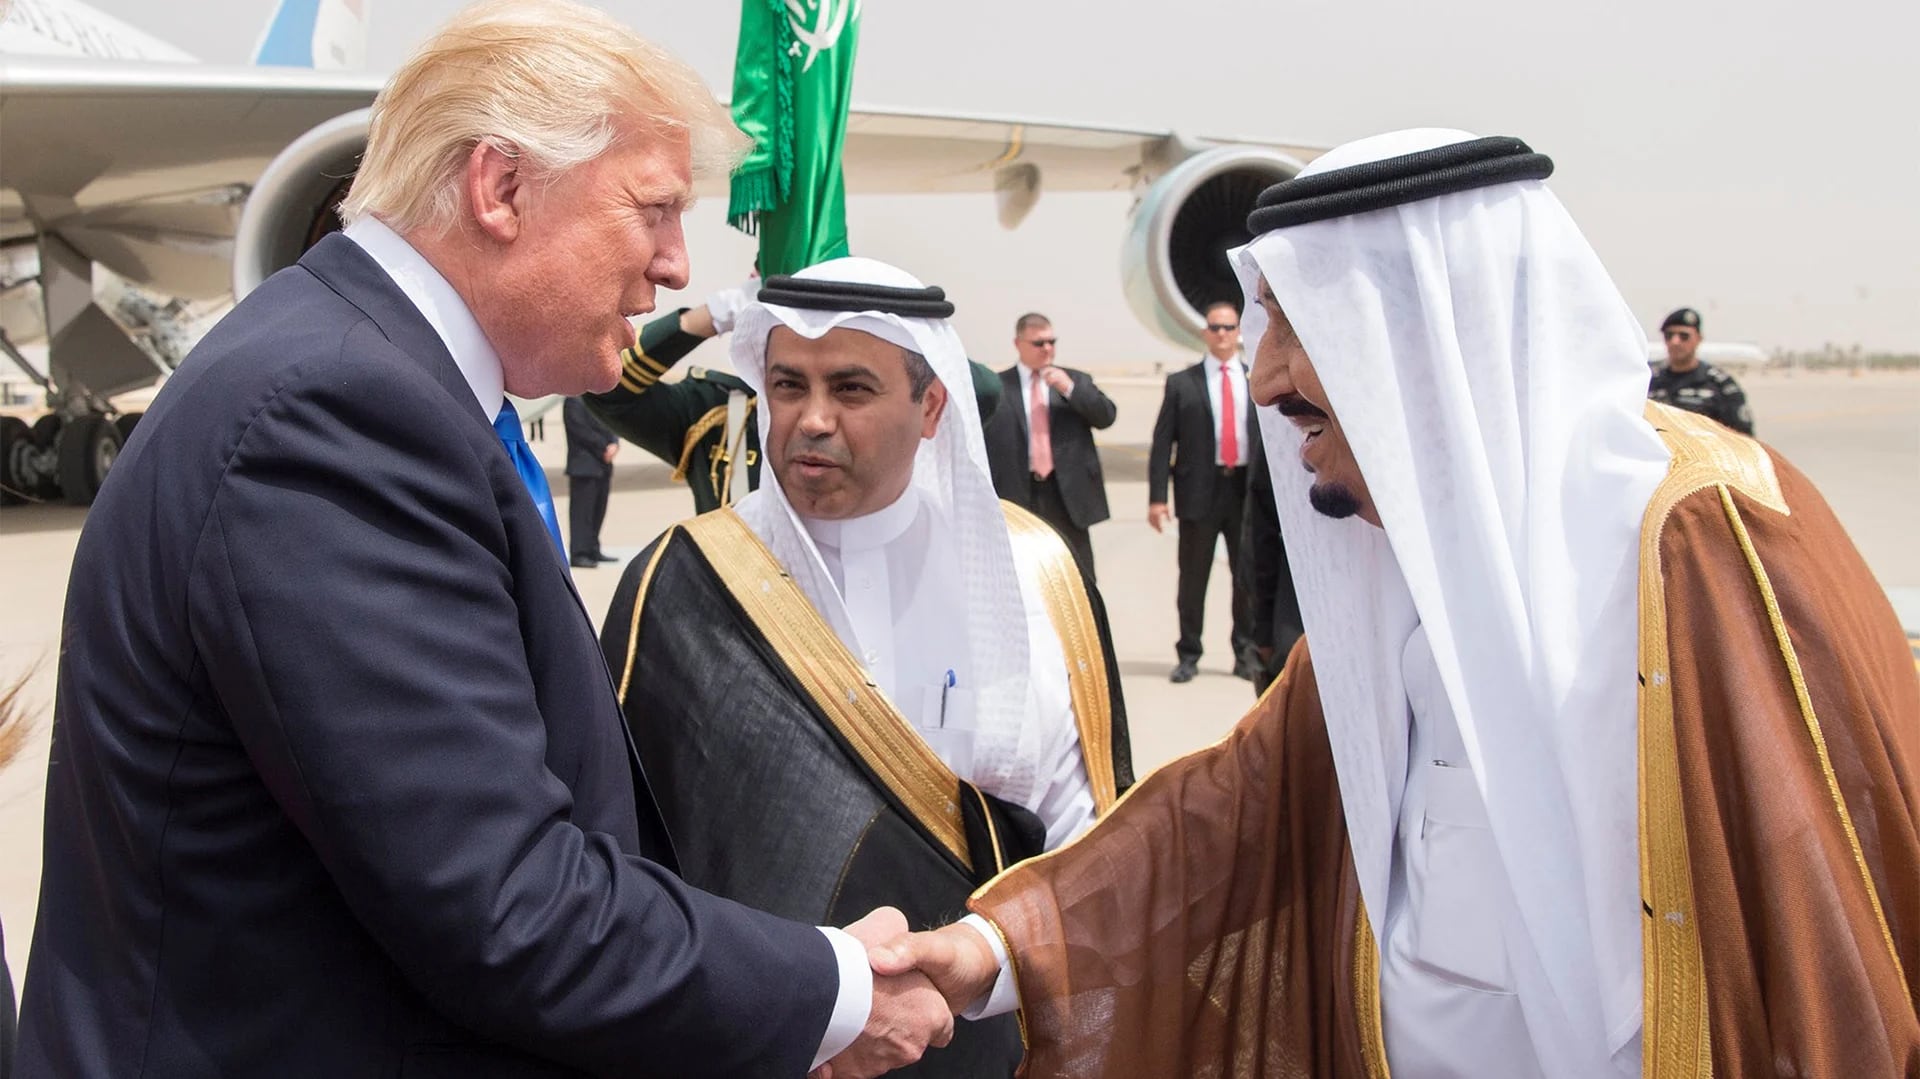 El rey de Arabia Saudita, Salman bin Abdulaziz al Saud, y el presidente estadounidense, Donald Trump